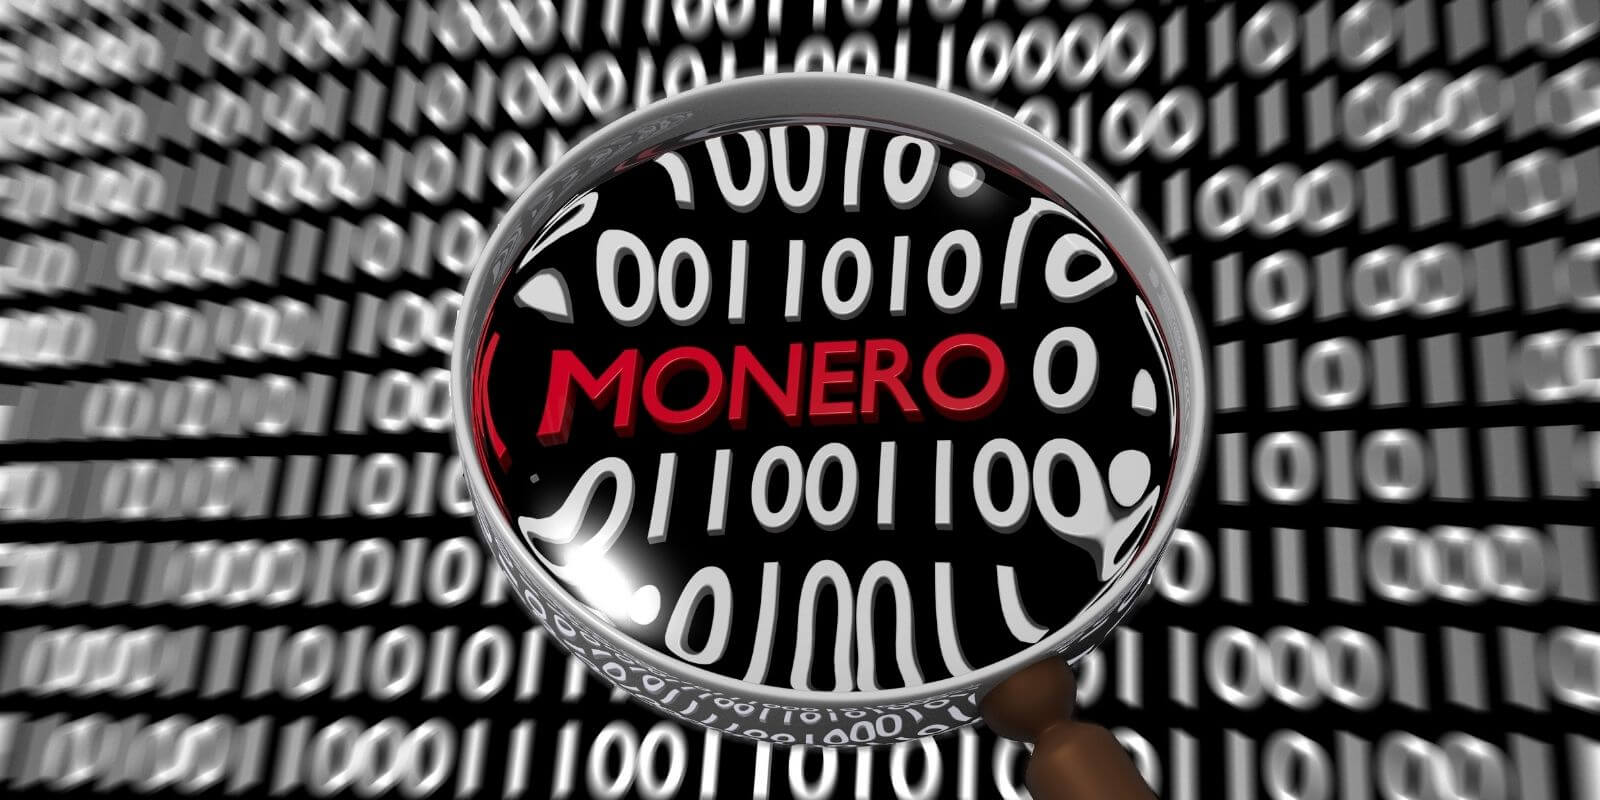 Monero (XMR) subit une attaque visant à démasquer les utilisateurs